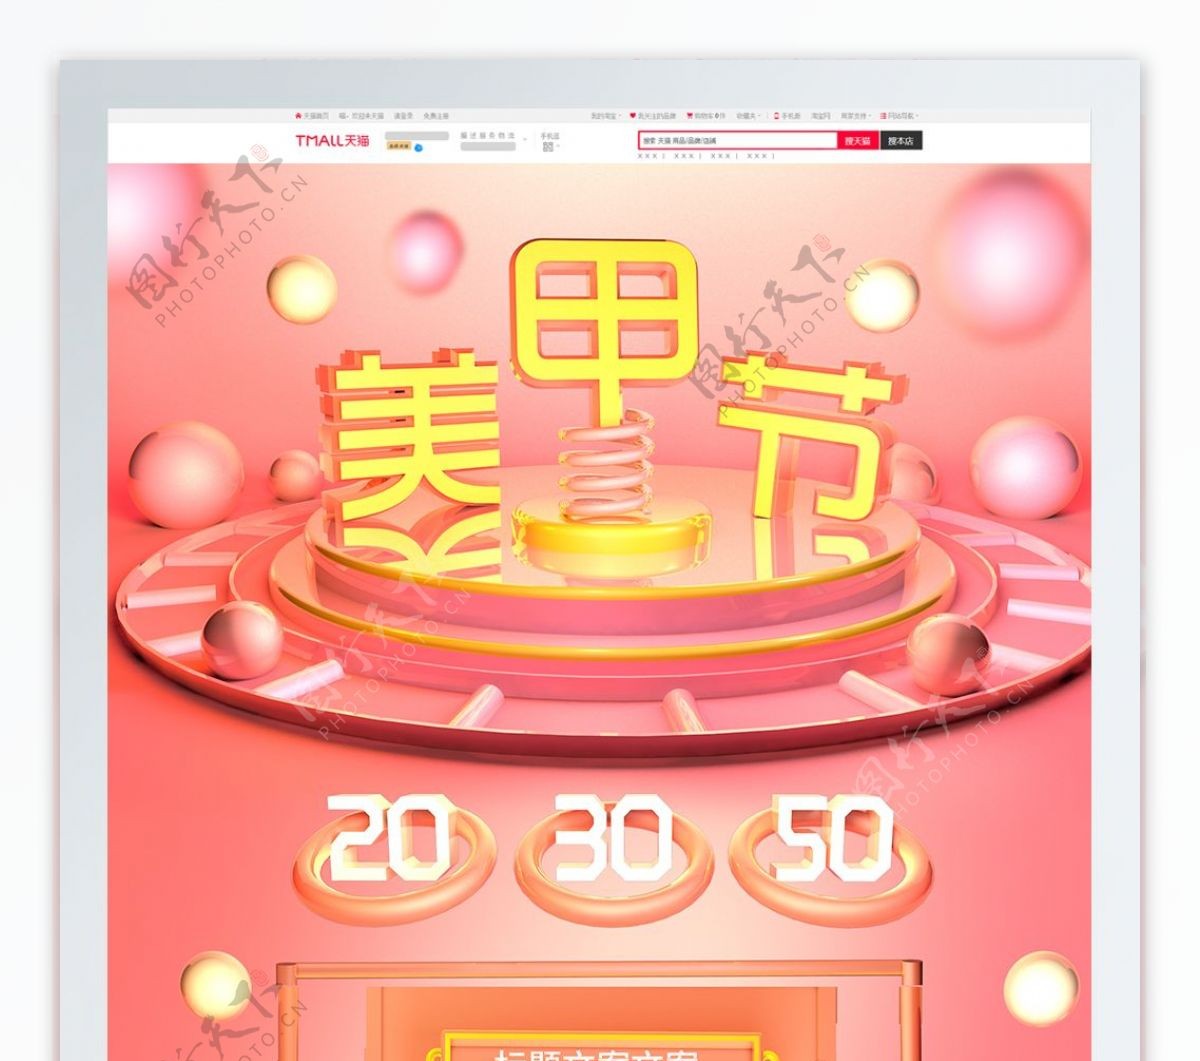 淘宝天猫美甲节粉色C4D首页模板